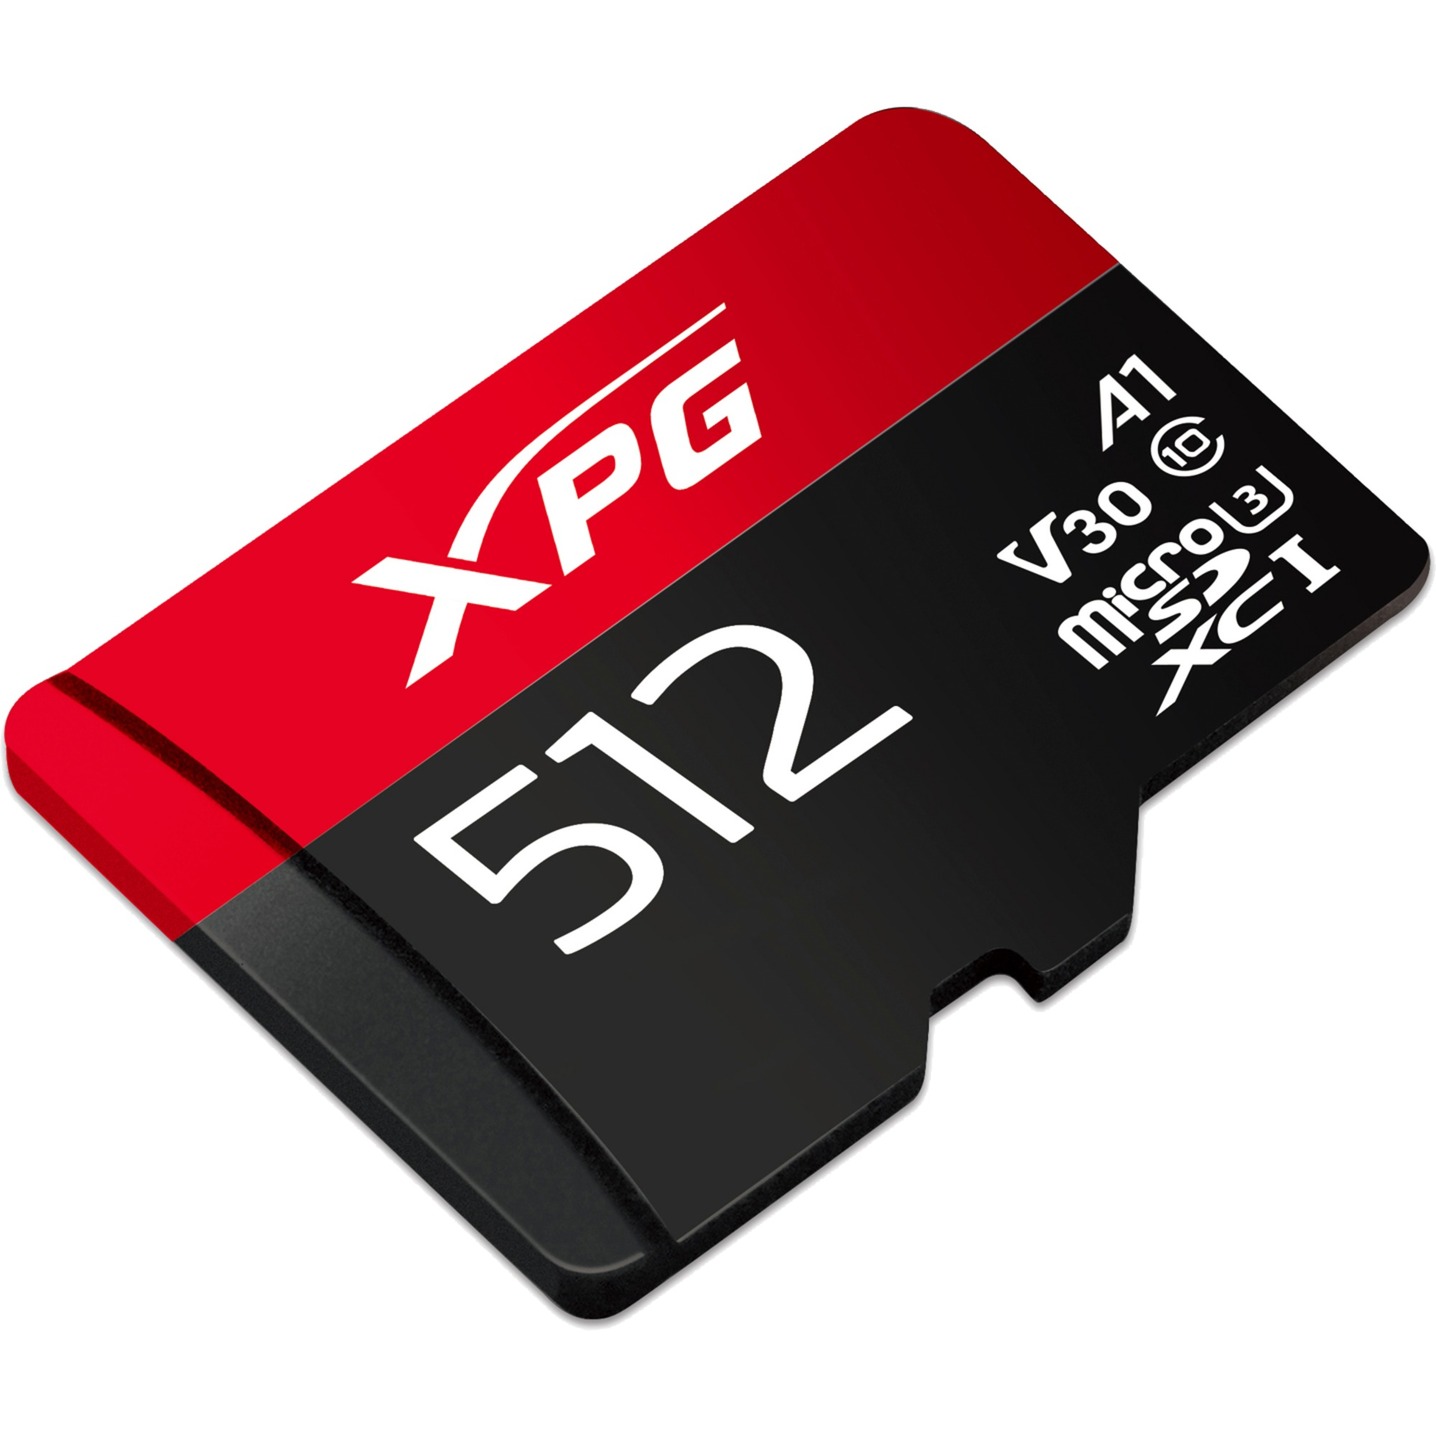 Image of Alternate - 512 GB microSDXC, Speicherkarte online einkaufen bei Alternate